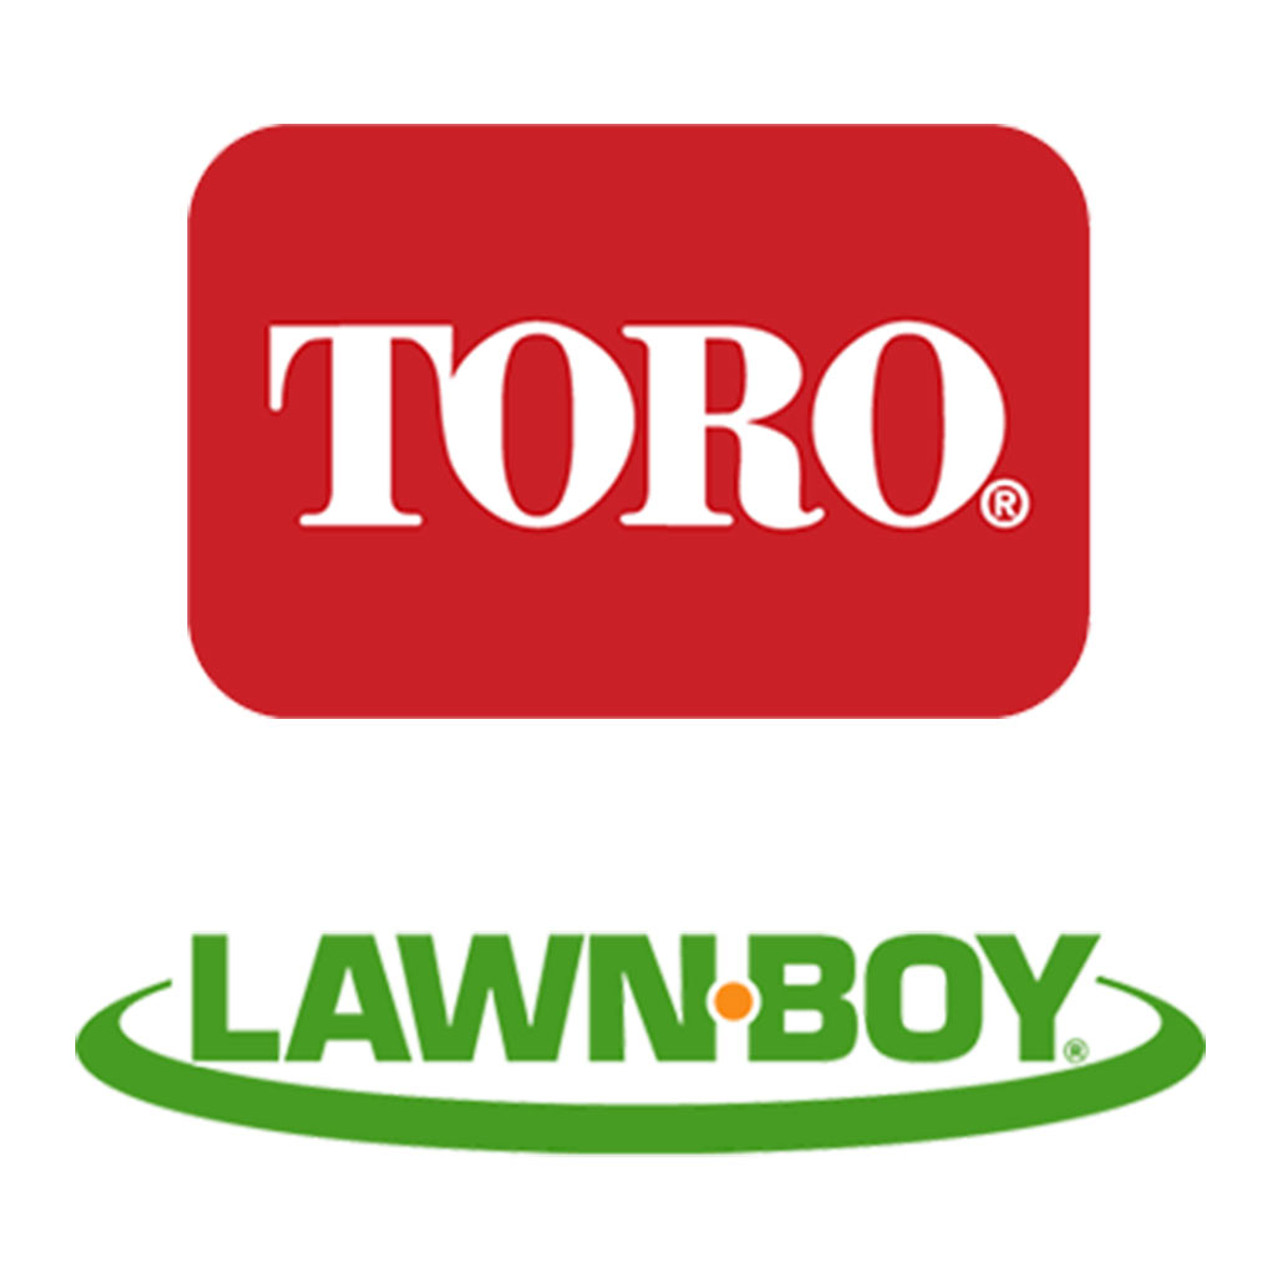 Toro Lawn-Boy 140-1004 Spring-Torsion